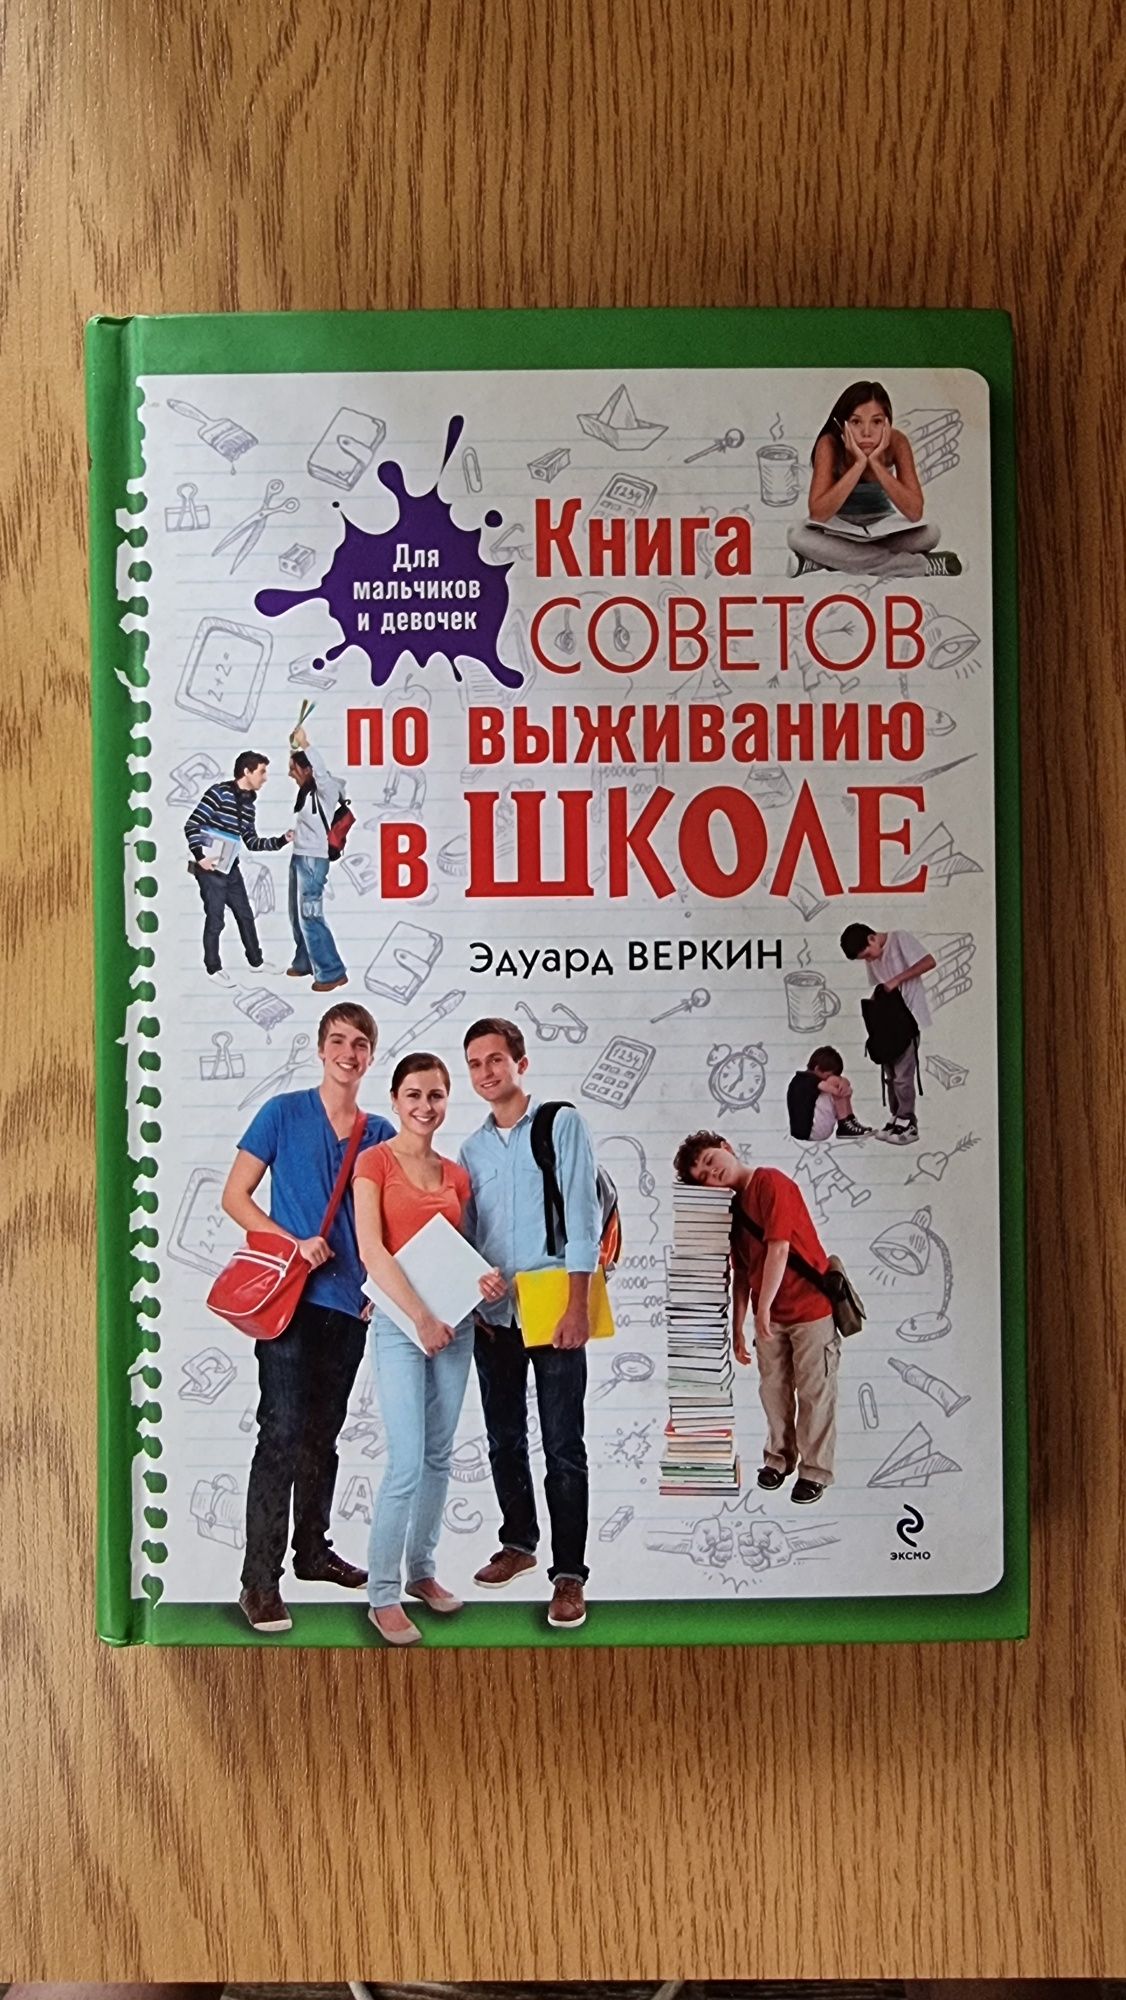 Эдуард Веркин "Книга советов по выживанию в школе"